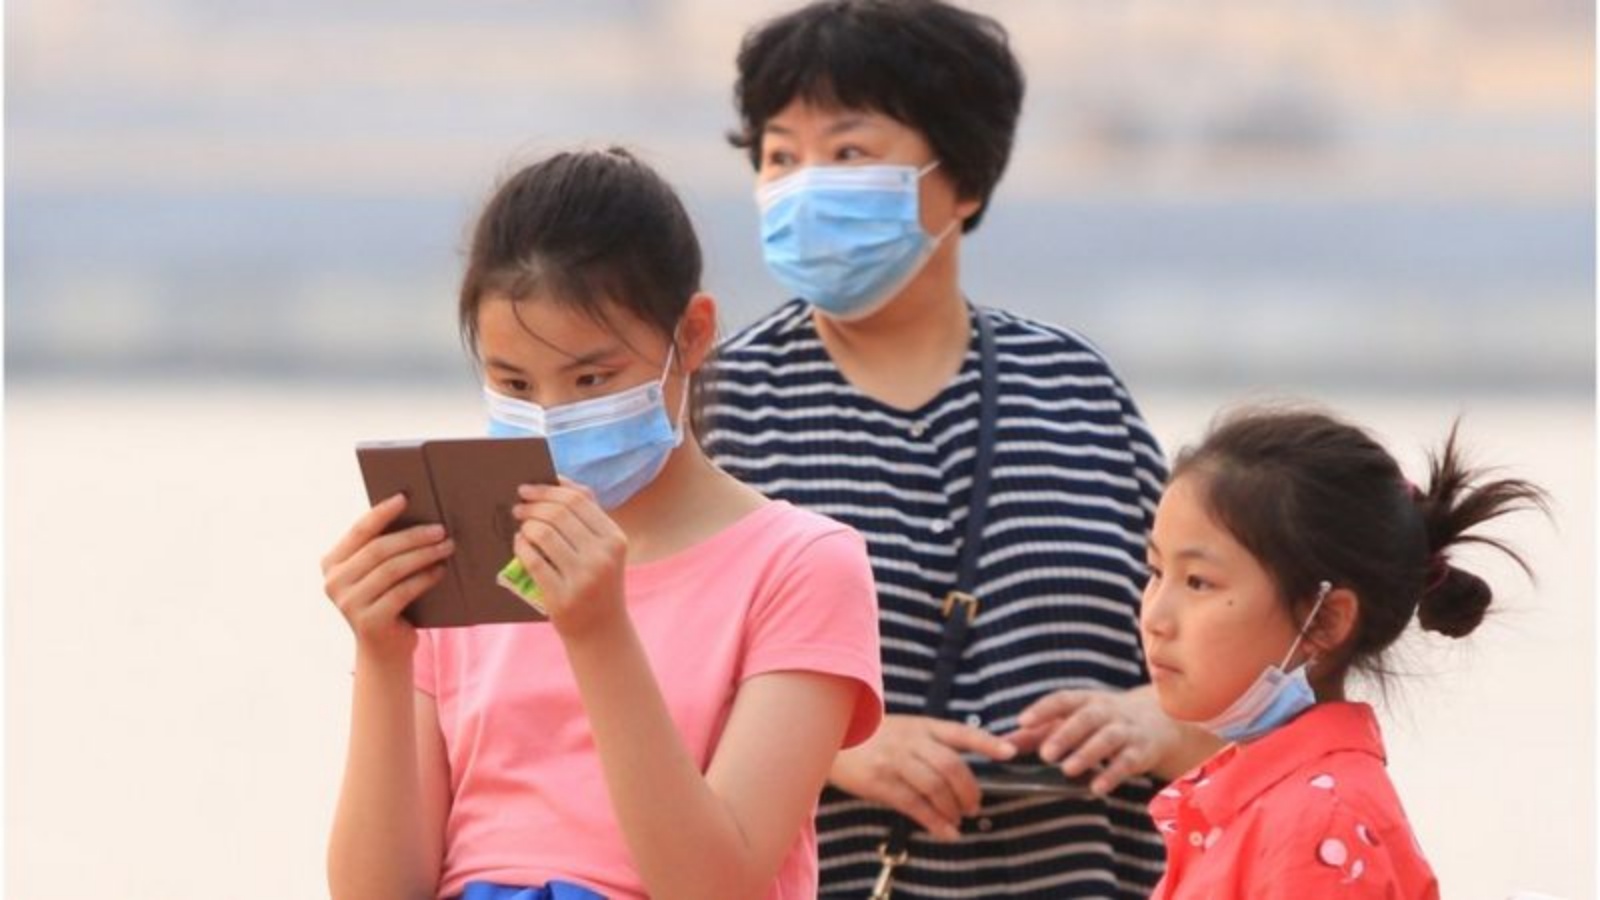 الفيروس منتشر بكثرة بين الأطفال في الصين